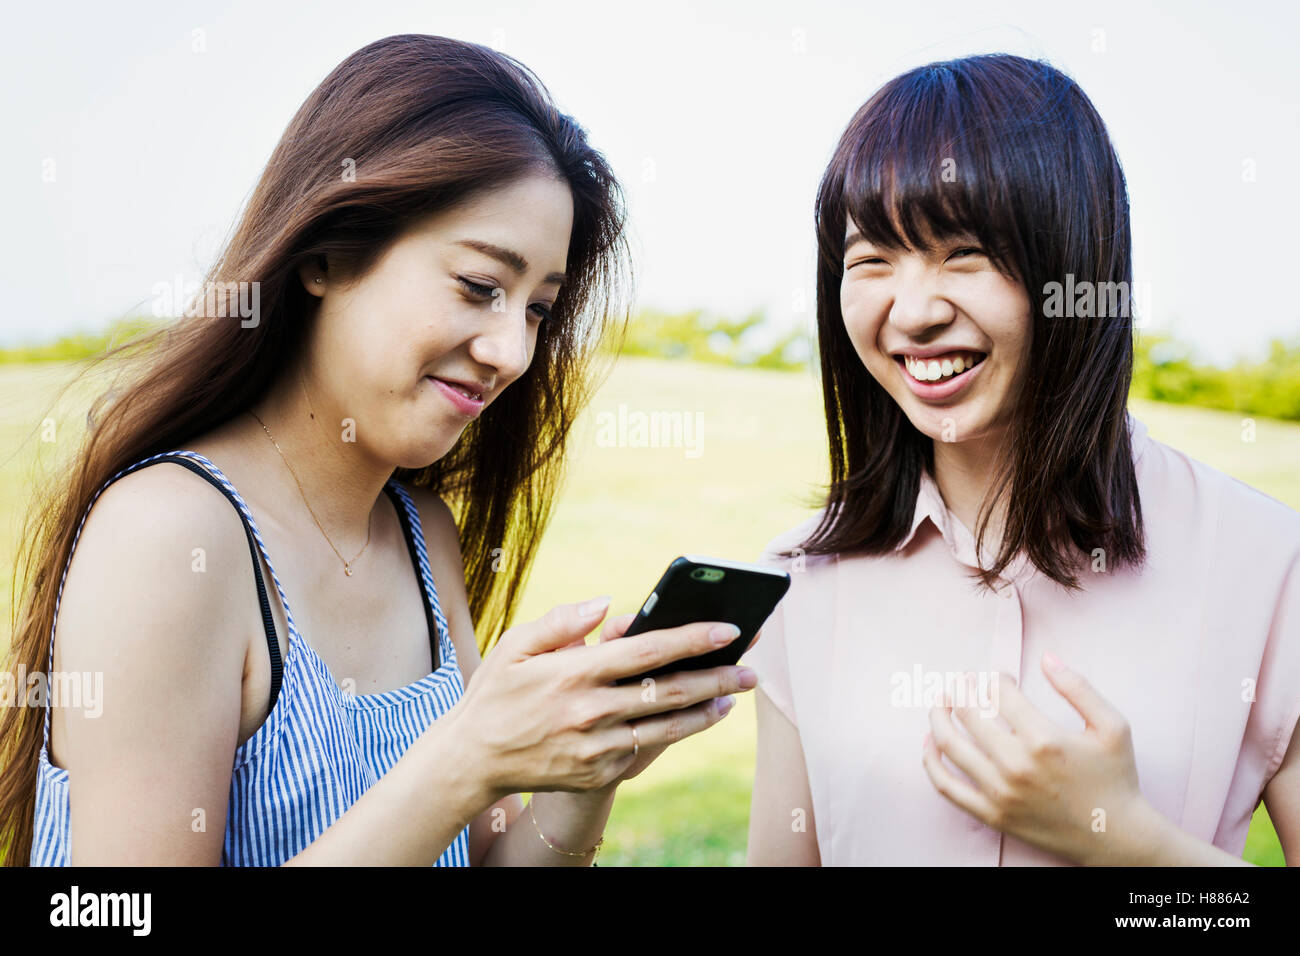 Zwei lächelnde junge Frauen mit langen braunen Haaren, halten eines Handys. Stockfoto